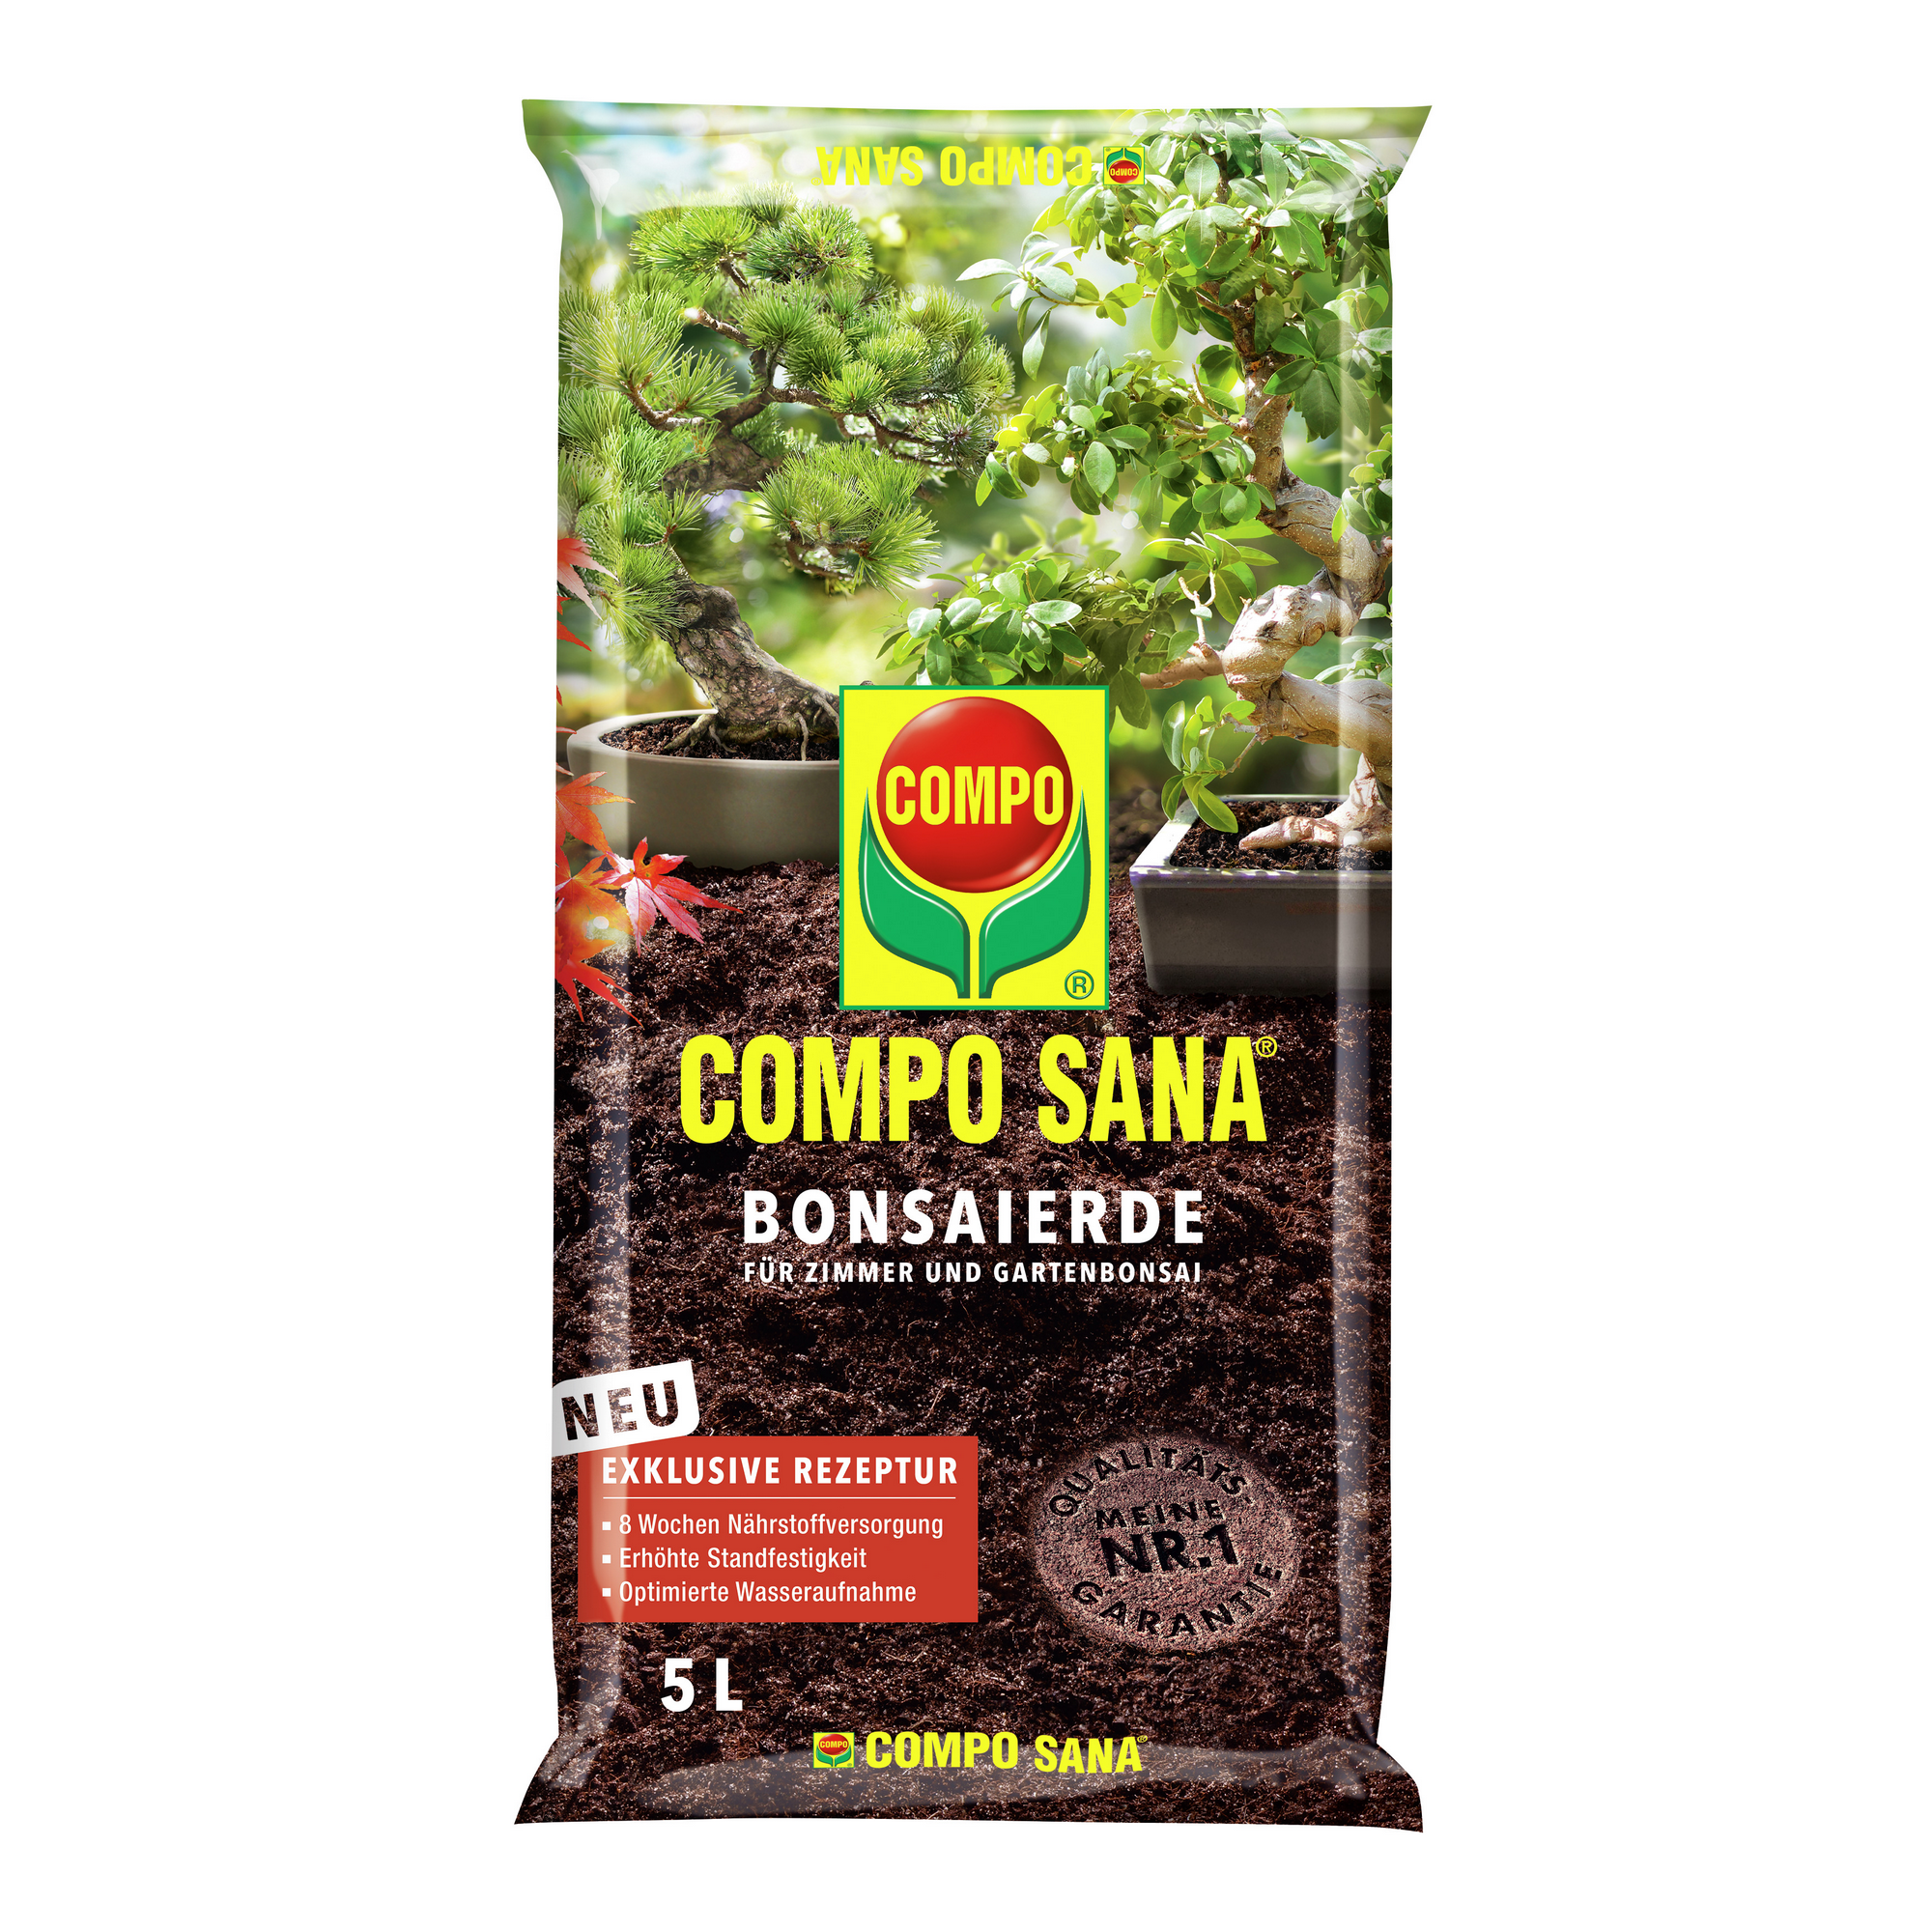 Compo Sana® Bonsaierde 5 l + product picture